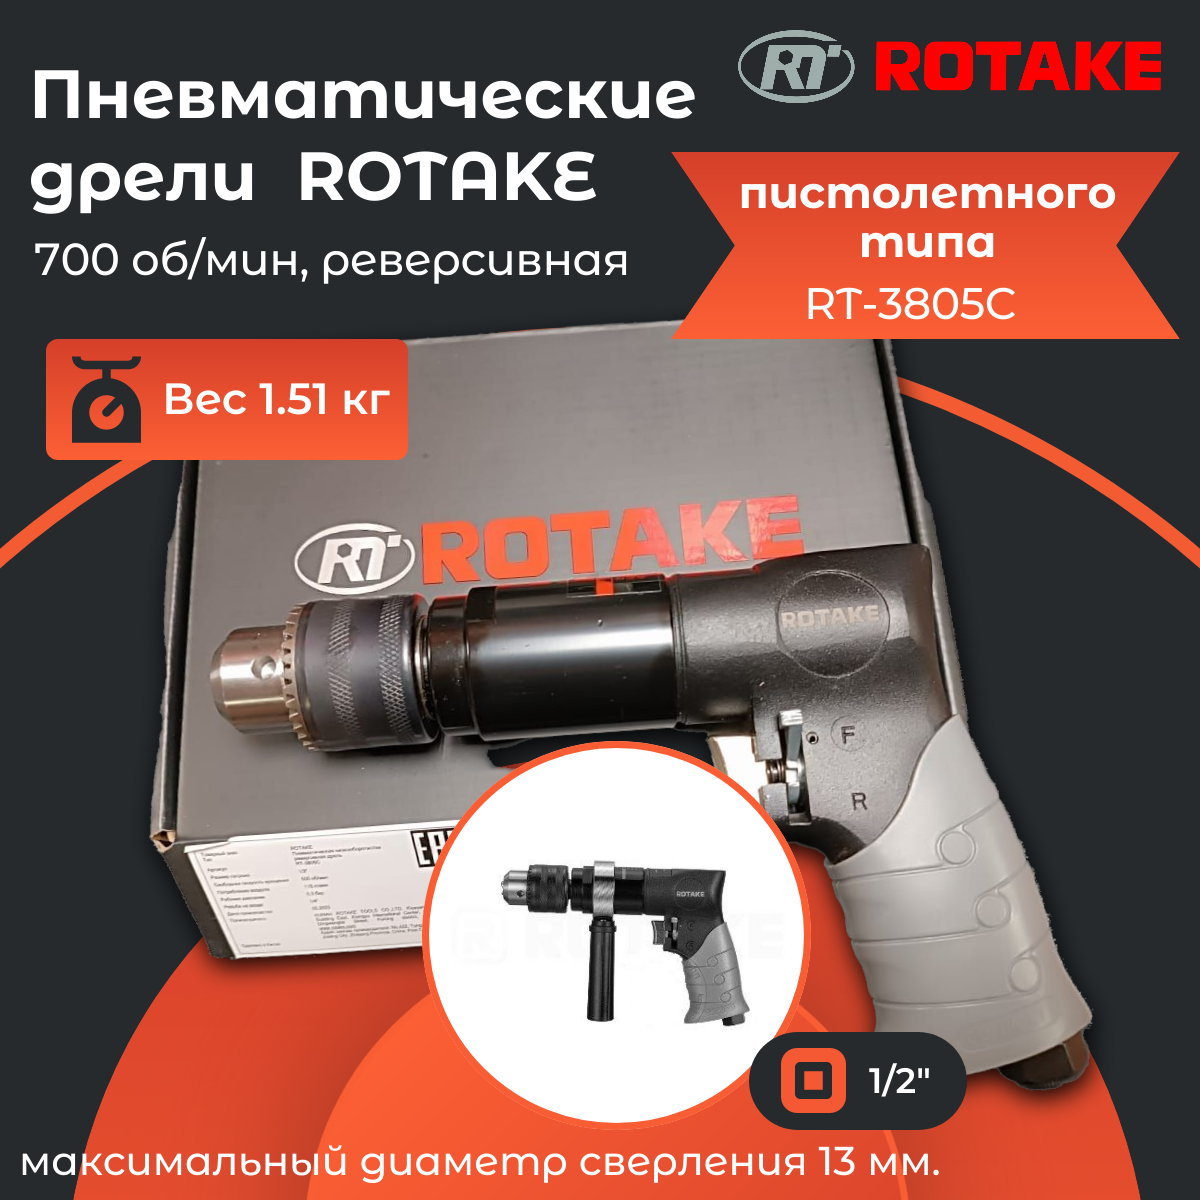 Rotake RT-3805C Пневмодрель 1/2